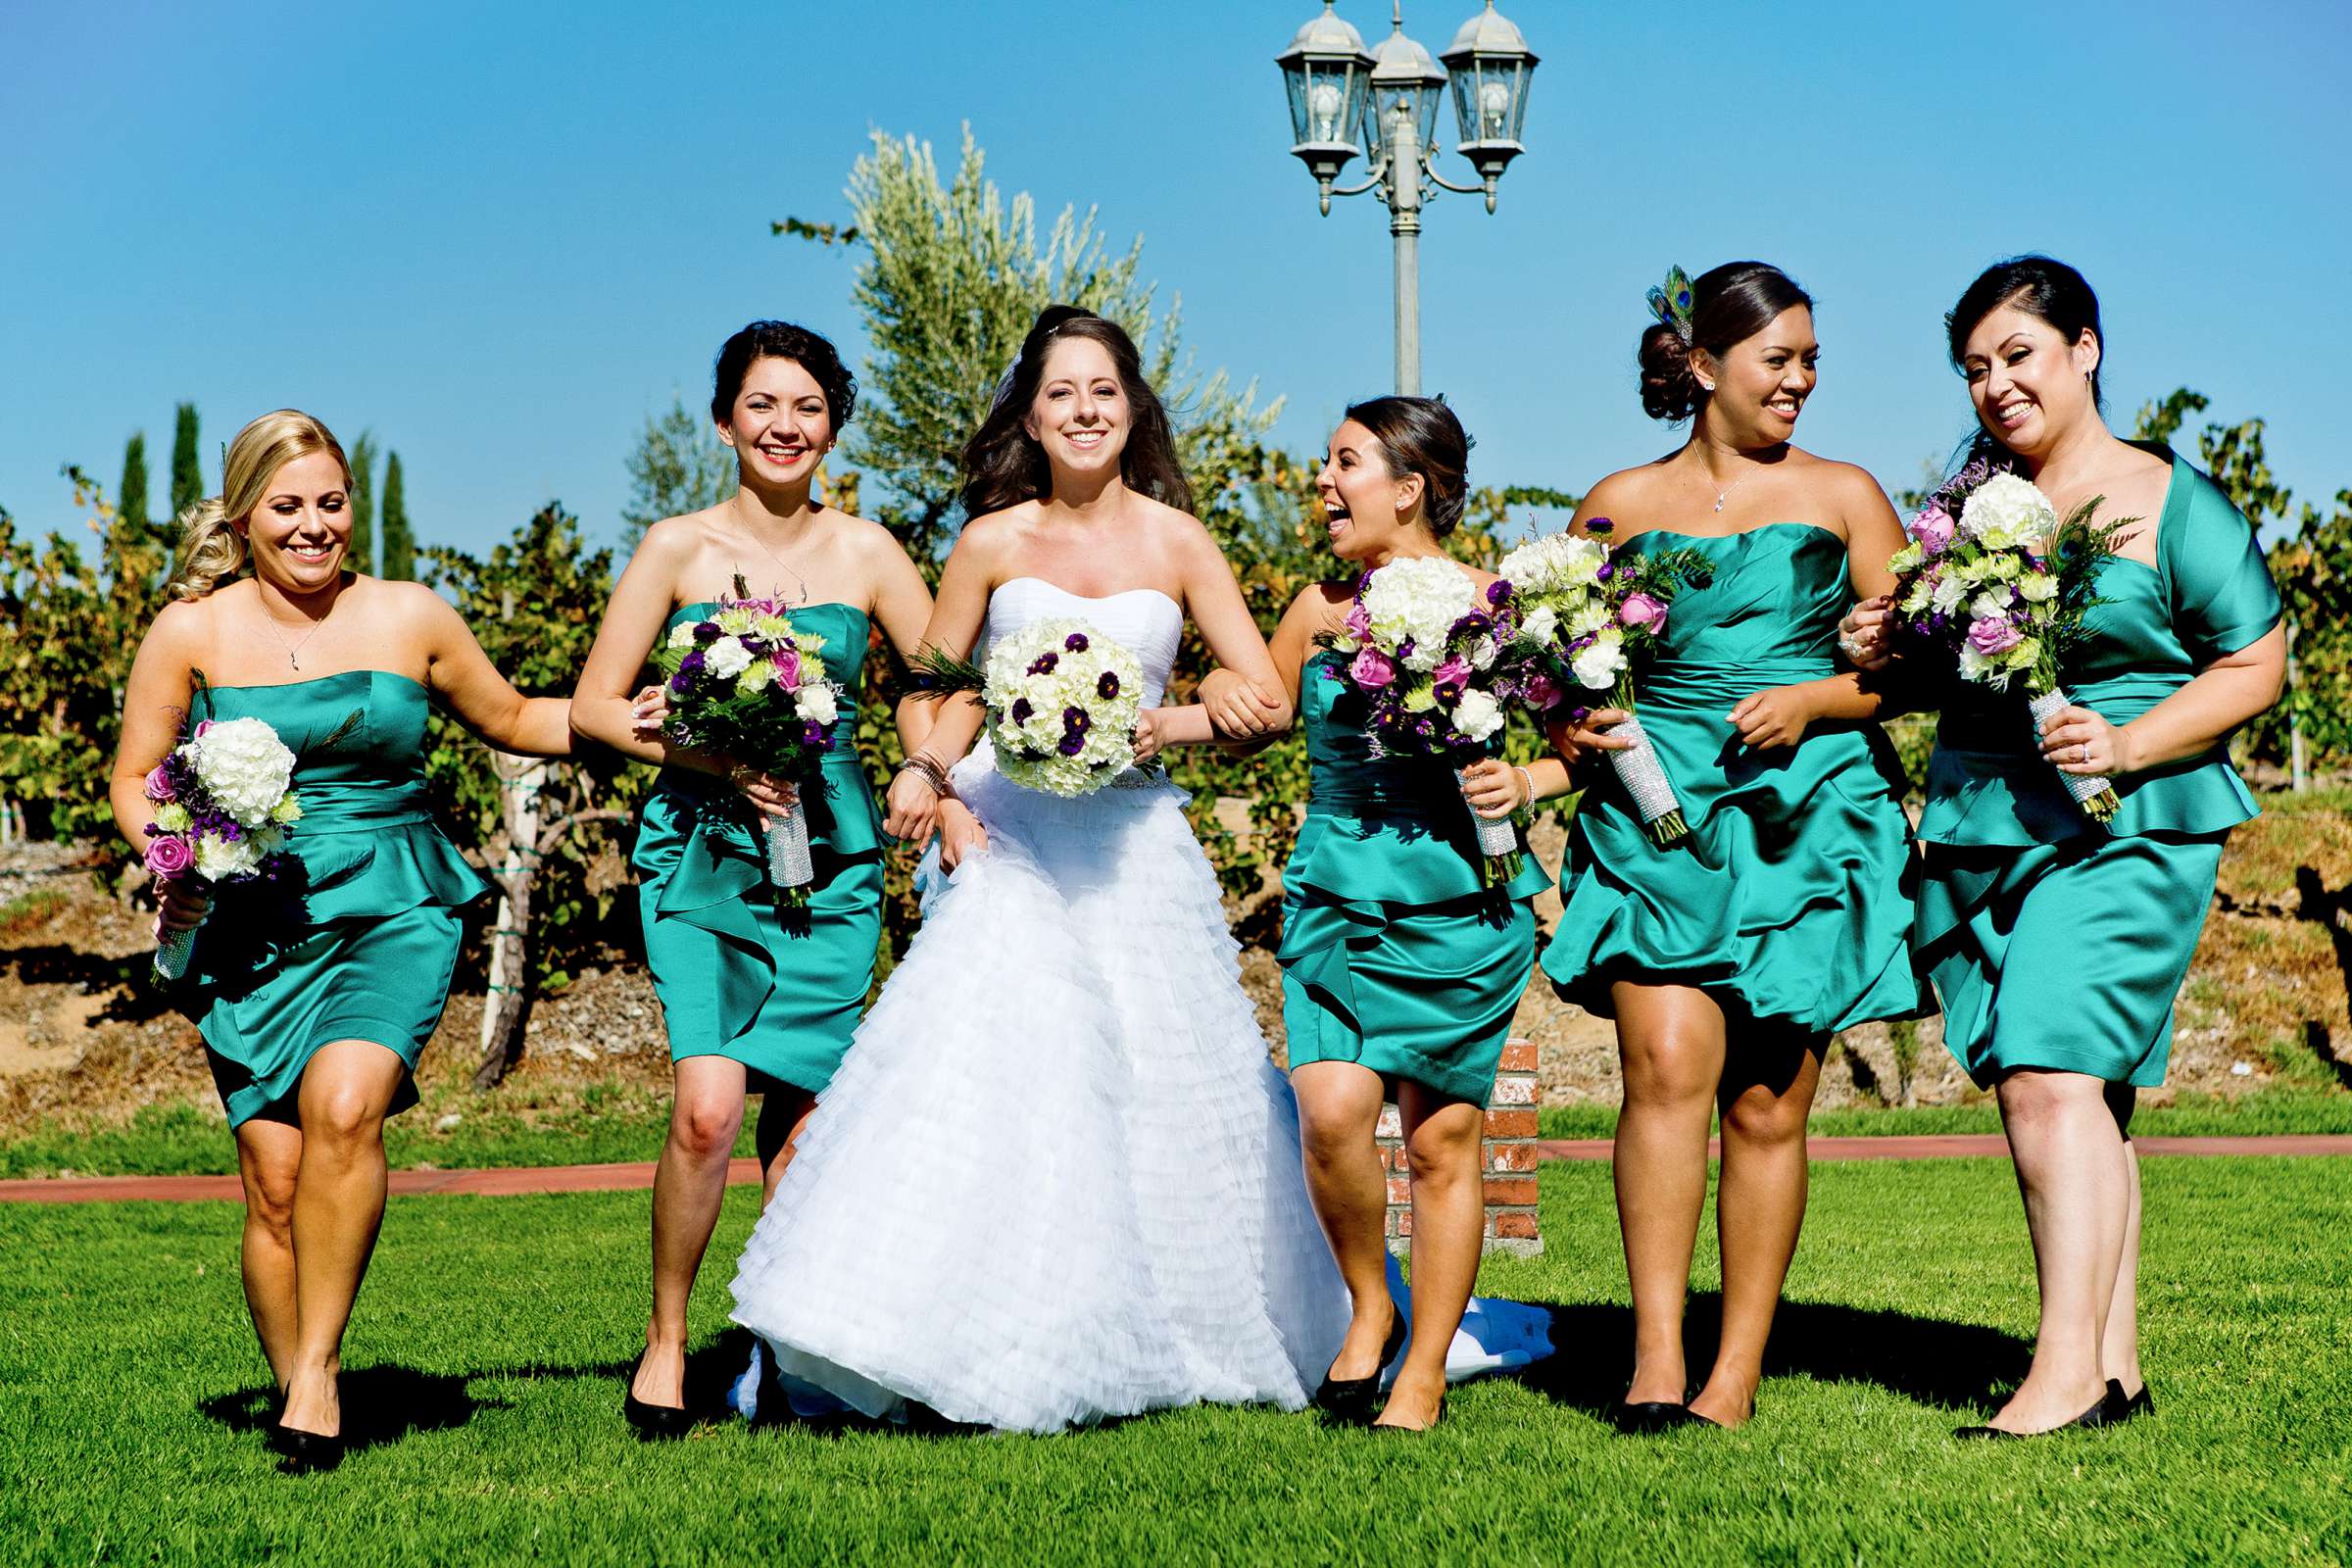 Mount Palomar Winery Wedding, Brandi and Jason Wedding Photo #321650 by True Photography